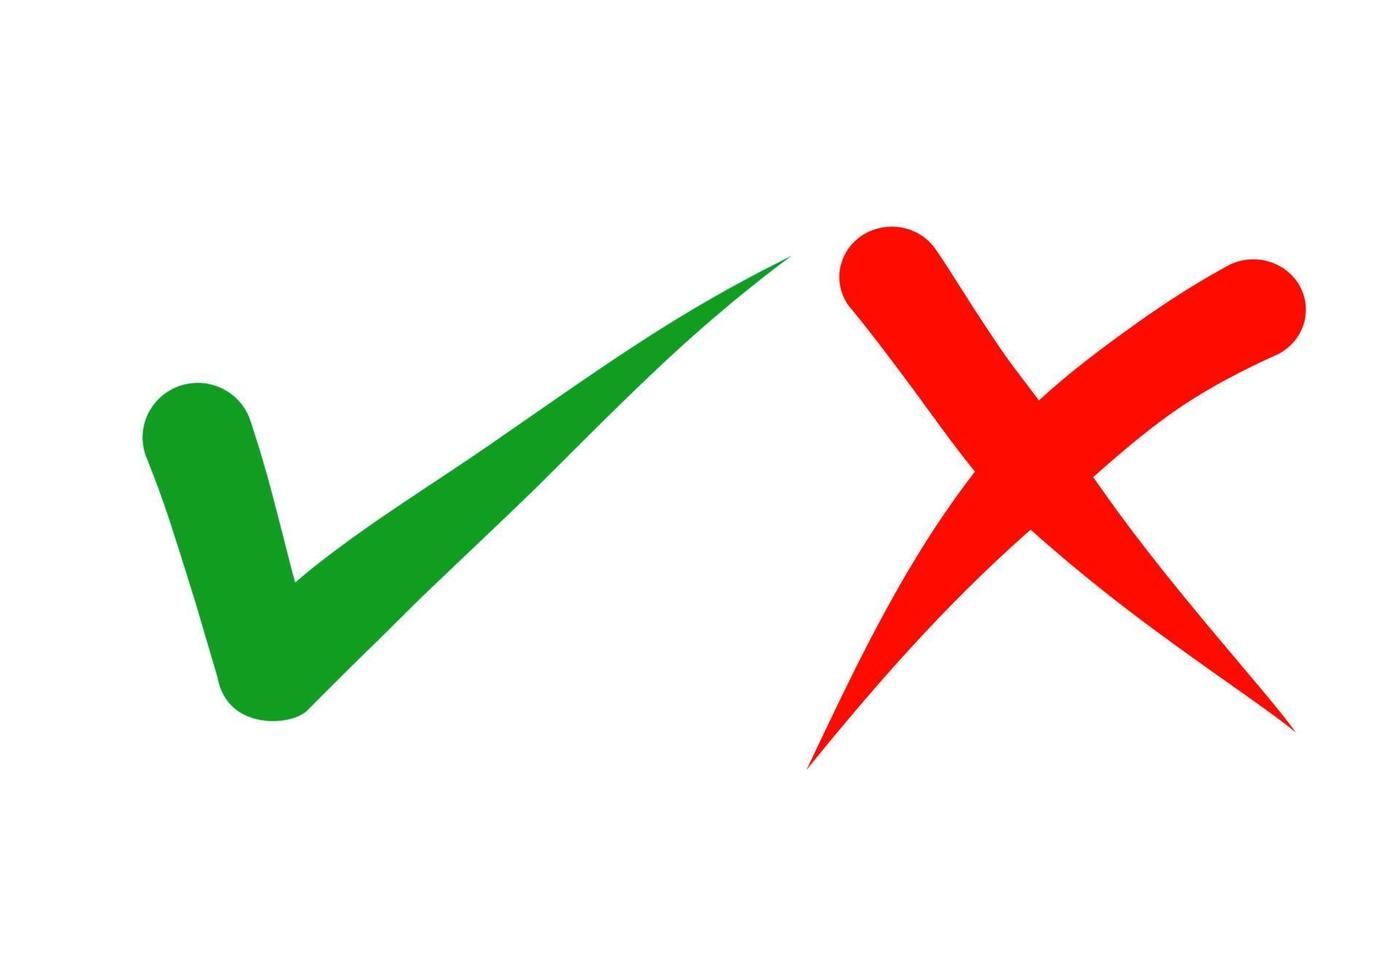 hand gezeichnet vom grünen häkchen und vom roten kreuz lokalisiert auf weißem hintergrund. Richtiges und falsches Symbol. Vektor-Illustration. vektor